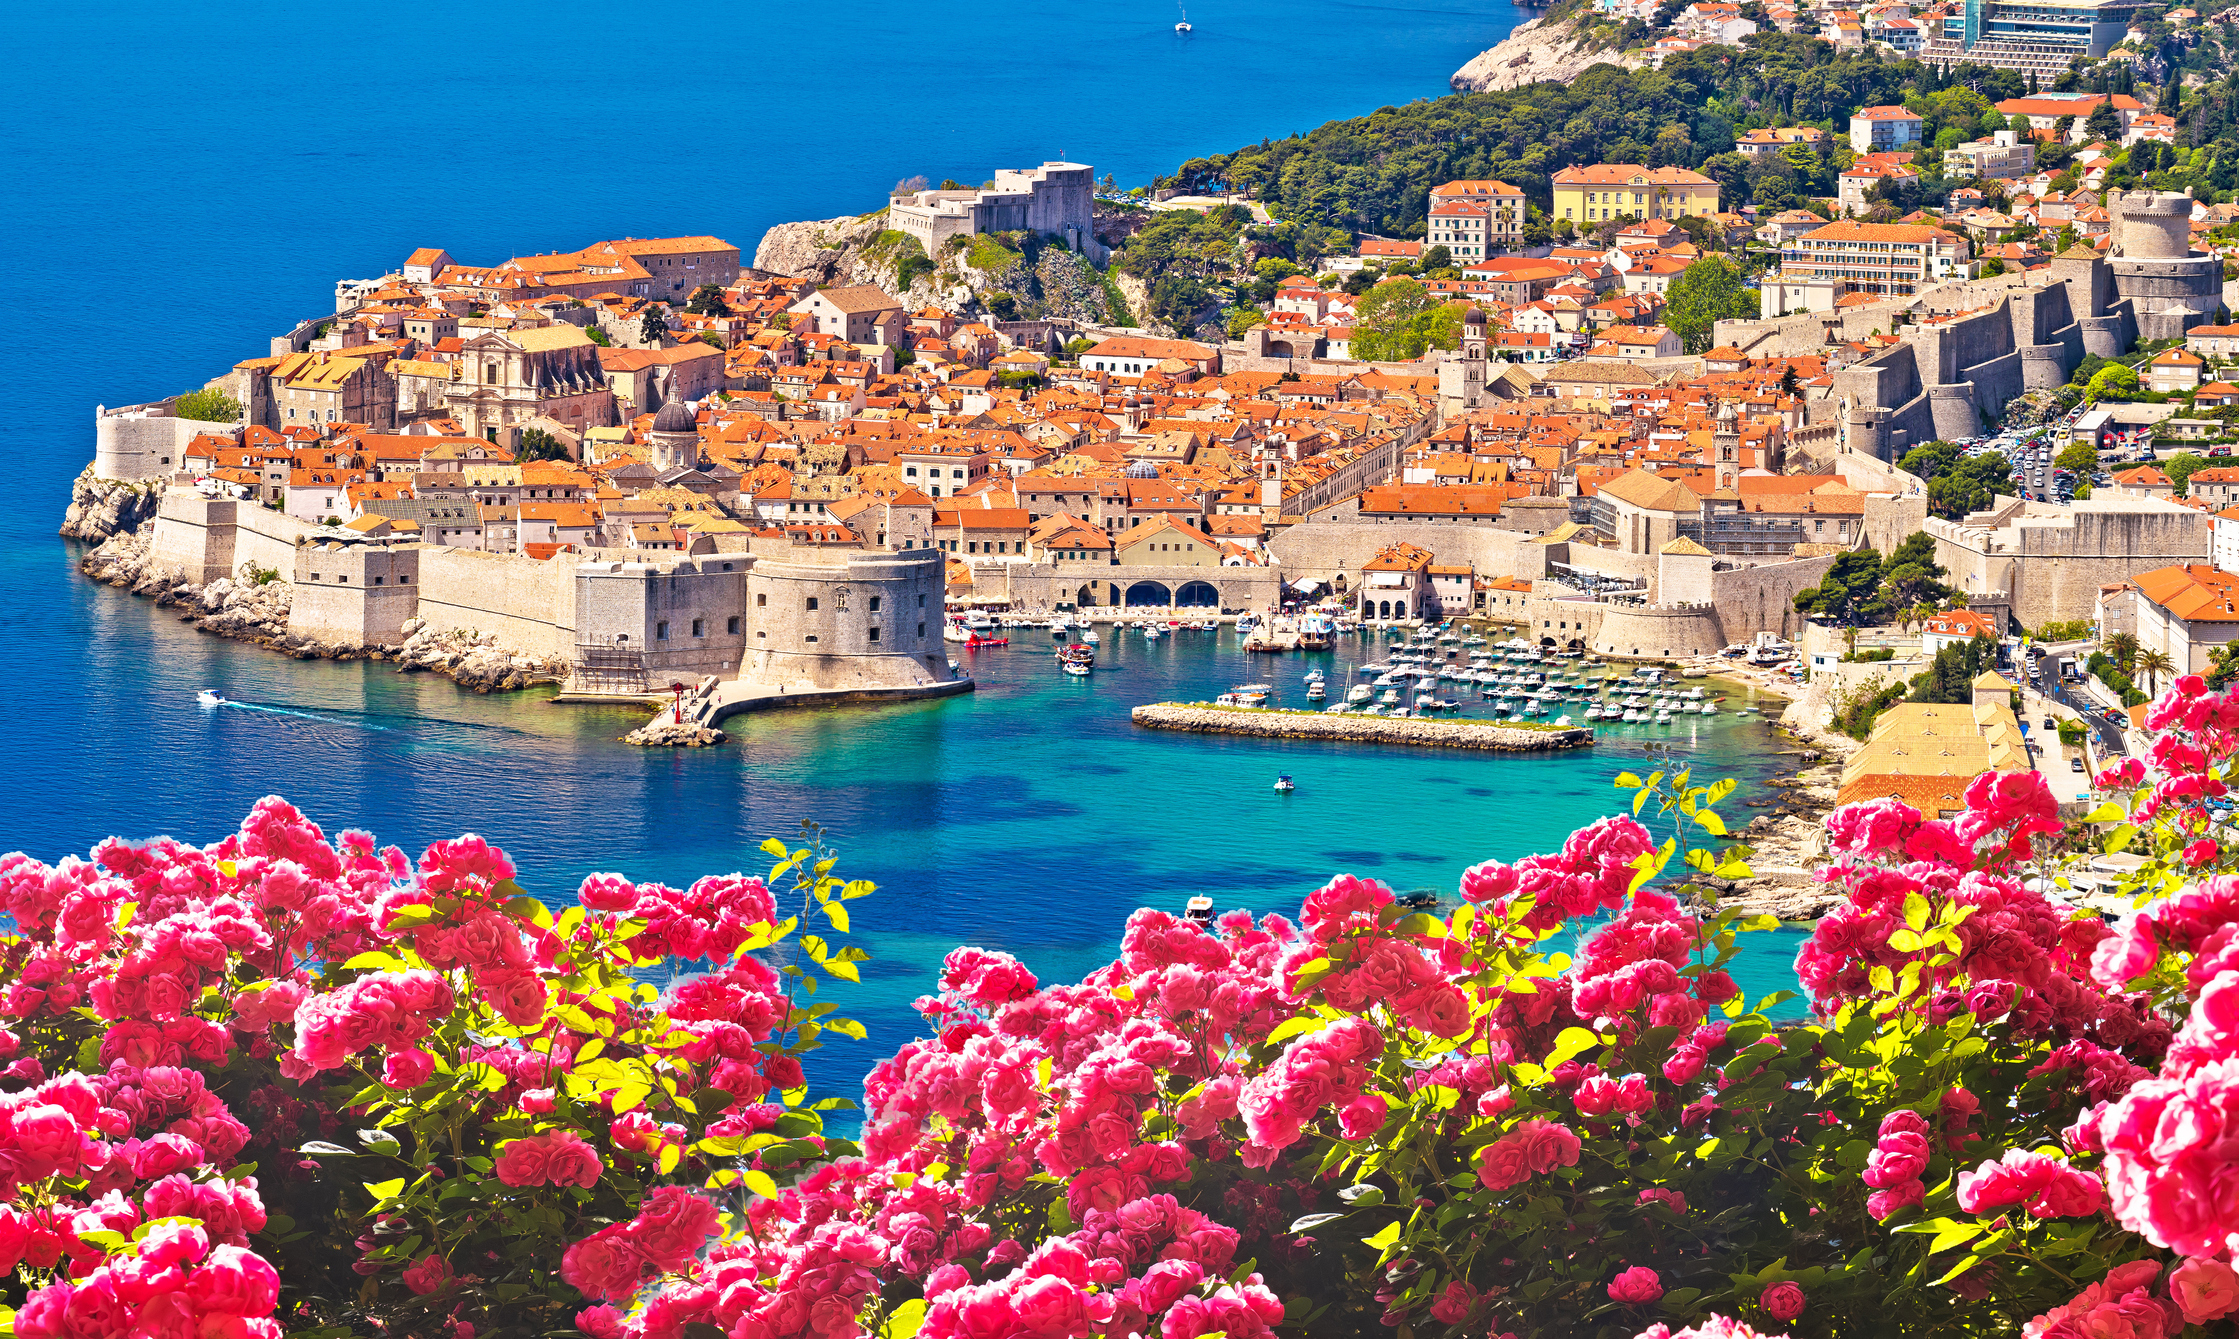 Melyik horvátországi várost látod a képen?